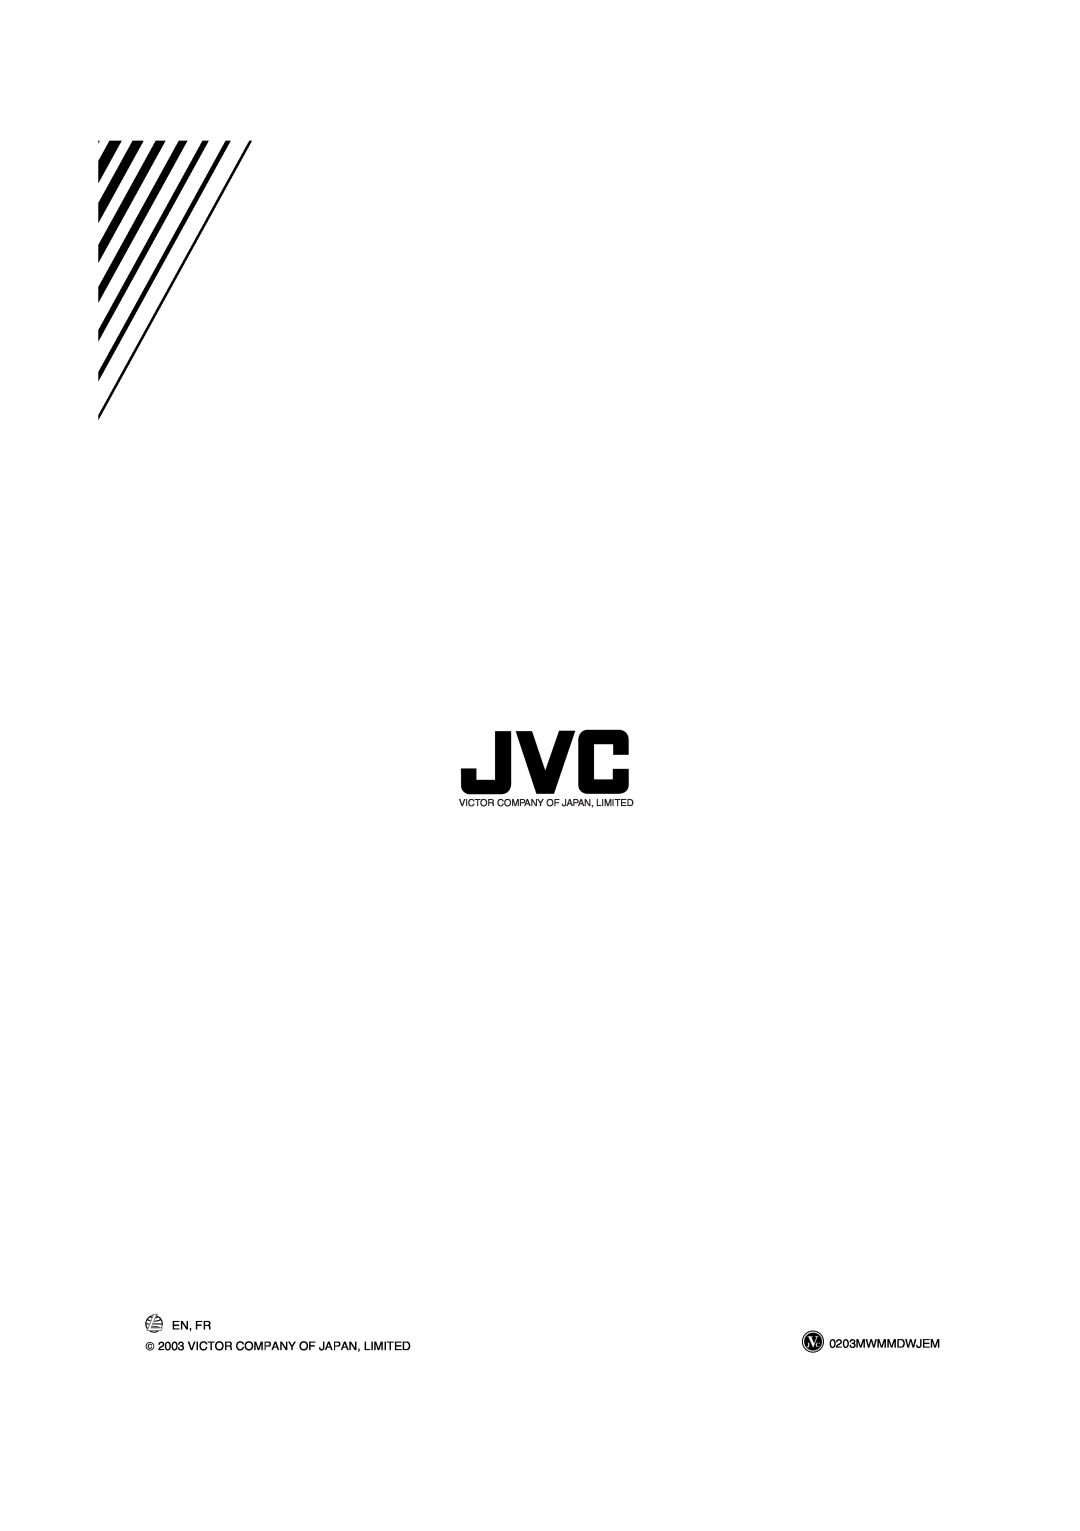 JVC HX-Z30 manual En, Fr,  2003 VICTOR COMPANY OF JAPAN, LIMITED, 0203MWMMDWJEM, Victor Company Of Japan, Limited 